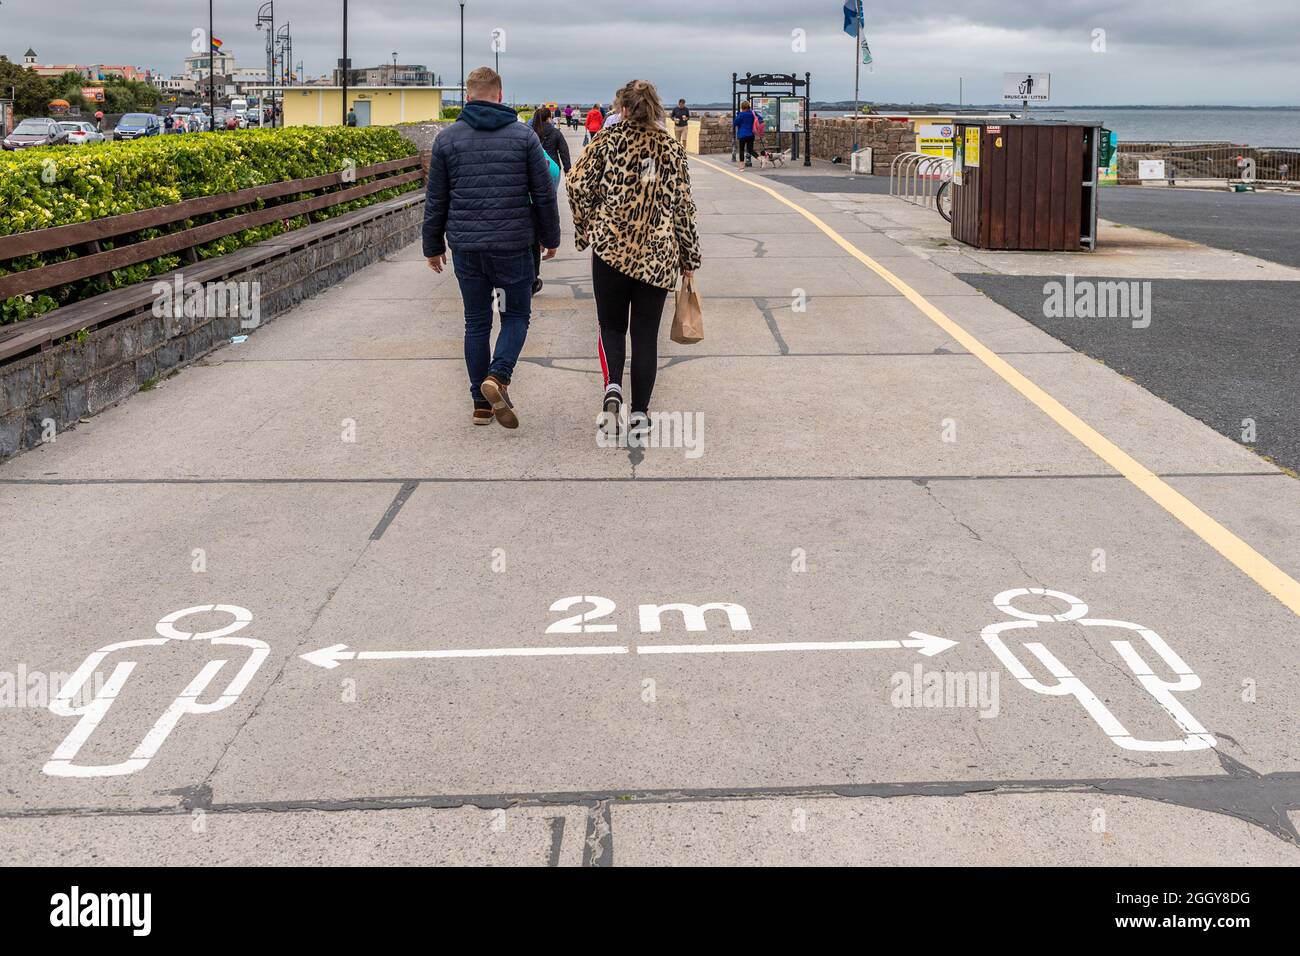 Die Menschen gehen an einem COVID-19 2m Schild an der Promenade in Salthill, County Galway, Irland, vorbei. Stockfoto